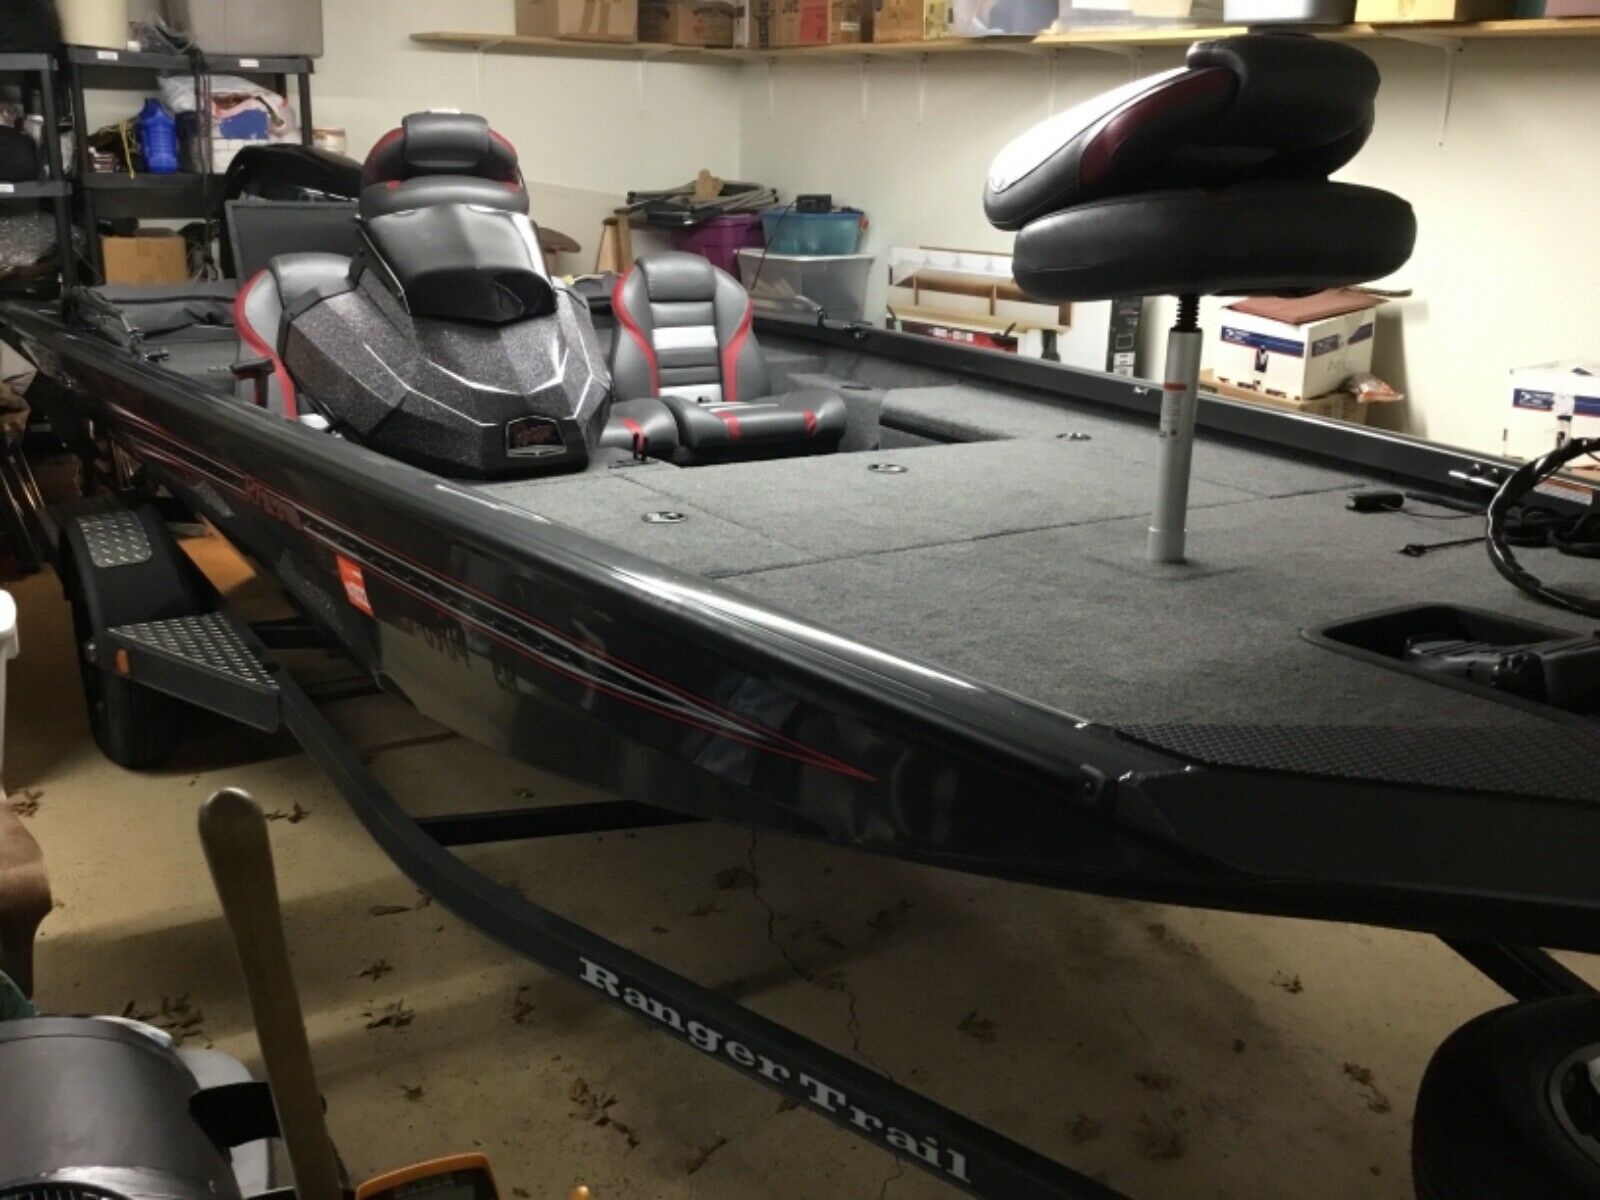 2020 Ranger Rt 178 Bass Boat - 2020 60 Hp Mercury - 2020 Ranger Trail Trailer